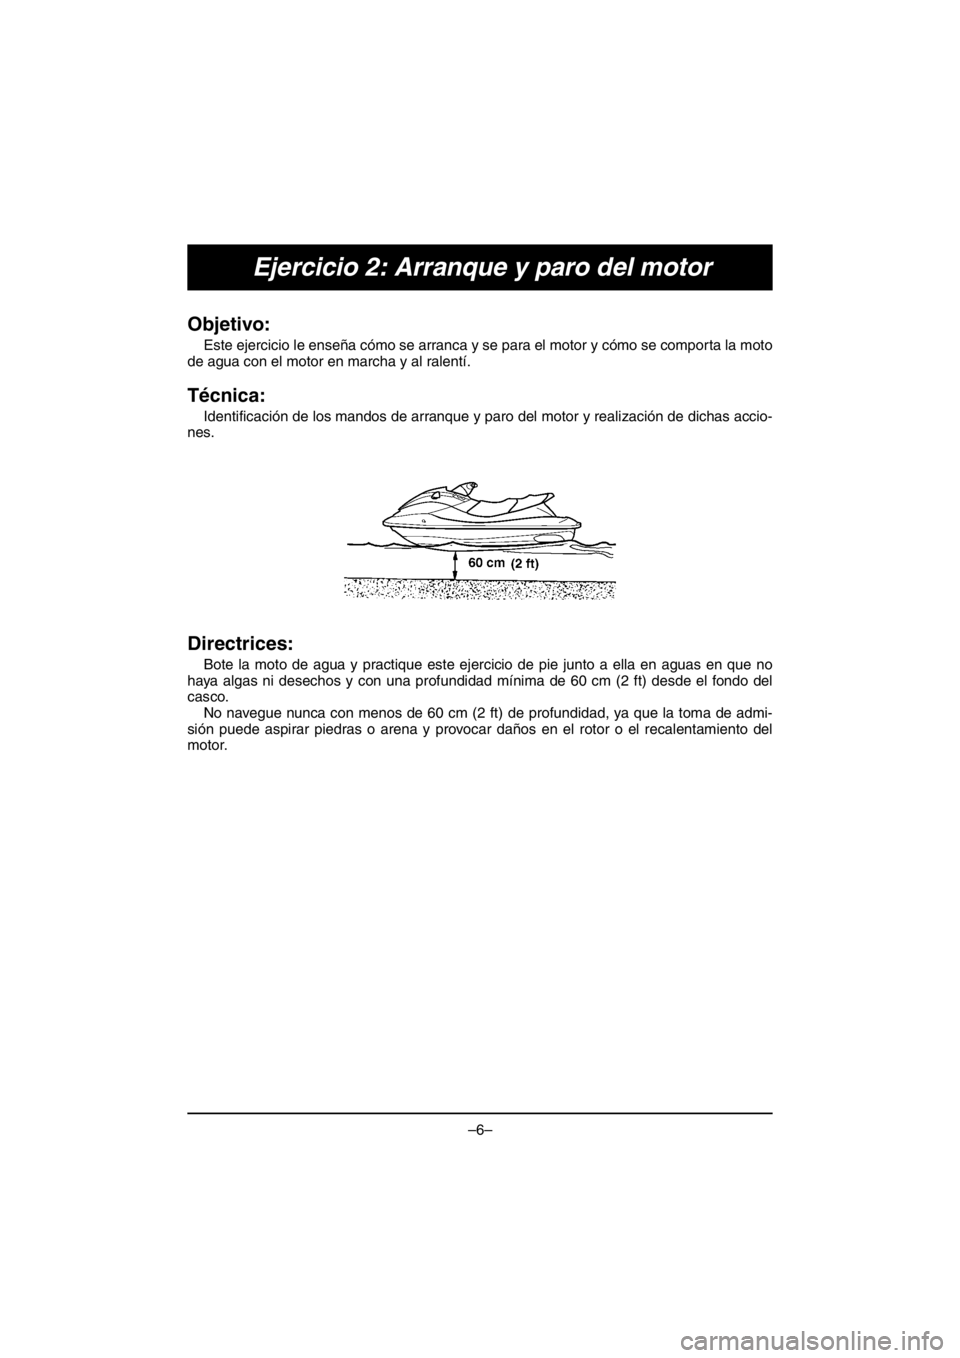 YAMAHA V1 2016 Manual Online –6–
Ejercicio 2: Arranque y paro del motor
Objetivo: 
Este ejercicio le enseña cómo se arranca y se para el motor y cómo se comporta la moto
de agua con el motor en marcha y al ralentí.
Técni